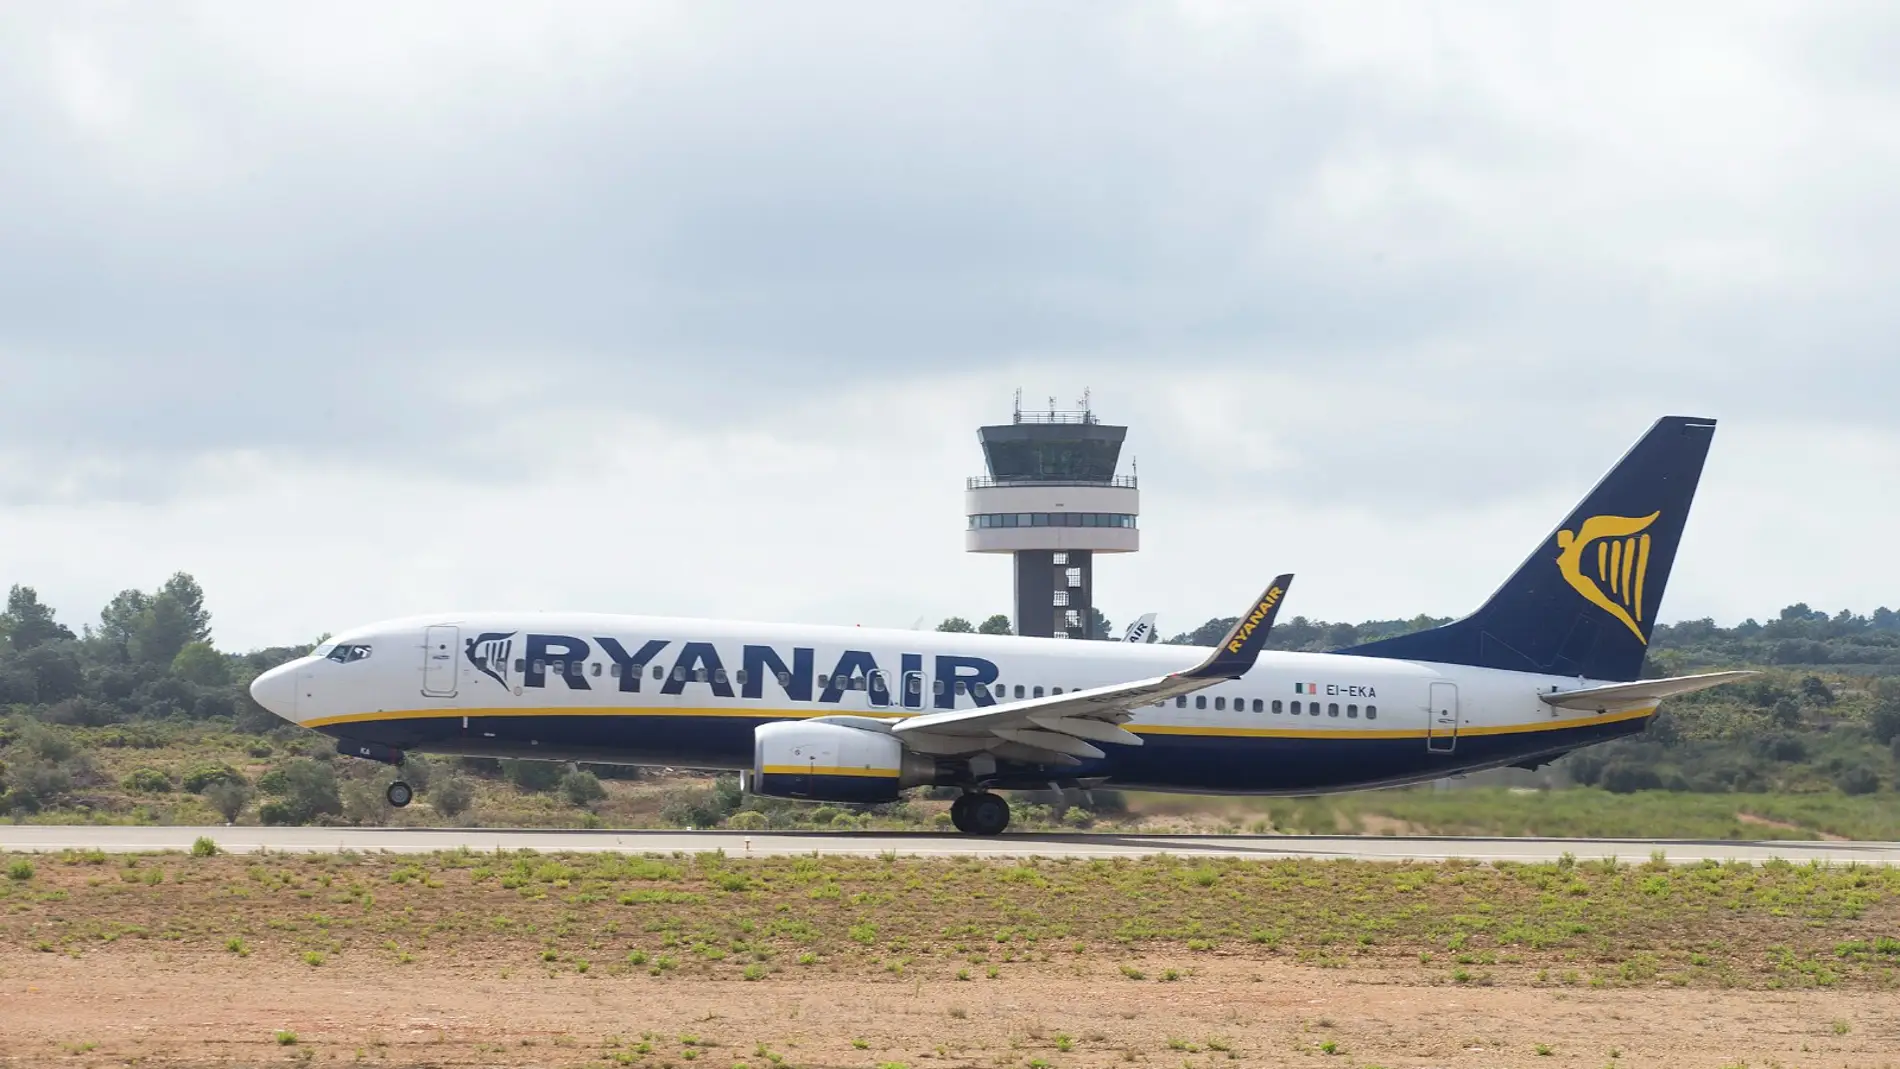 Ryanair conectará Castellón con Oporto a partir del próximo 28 de marzo